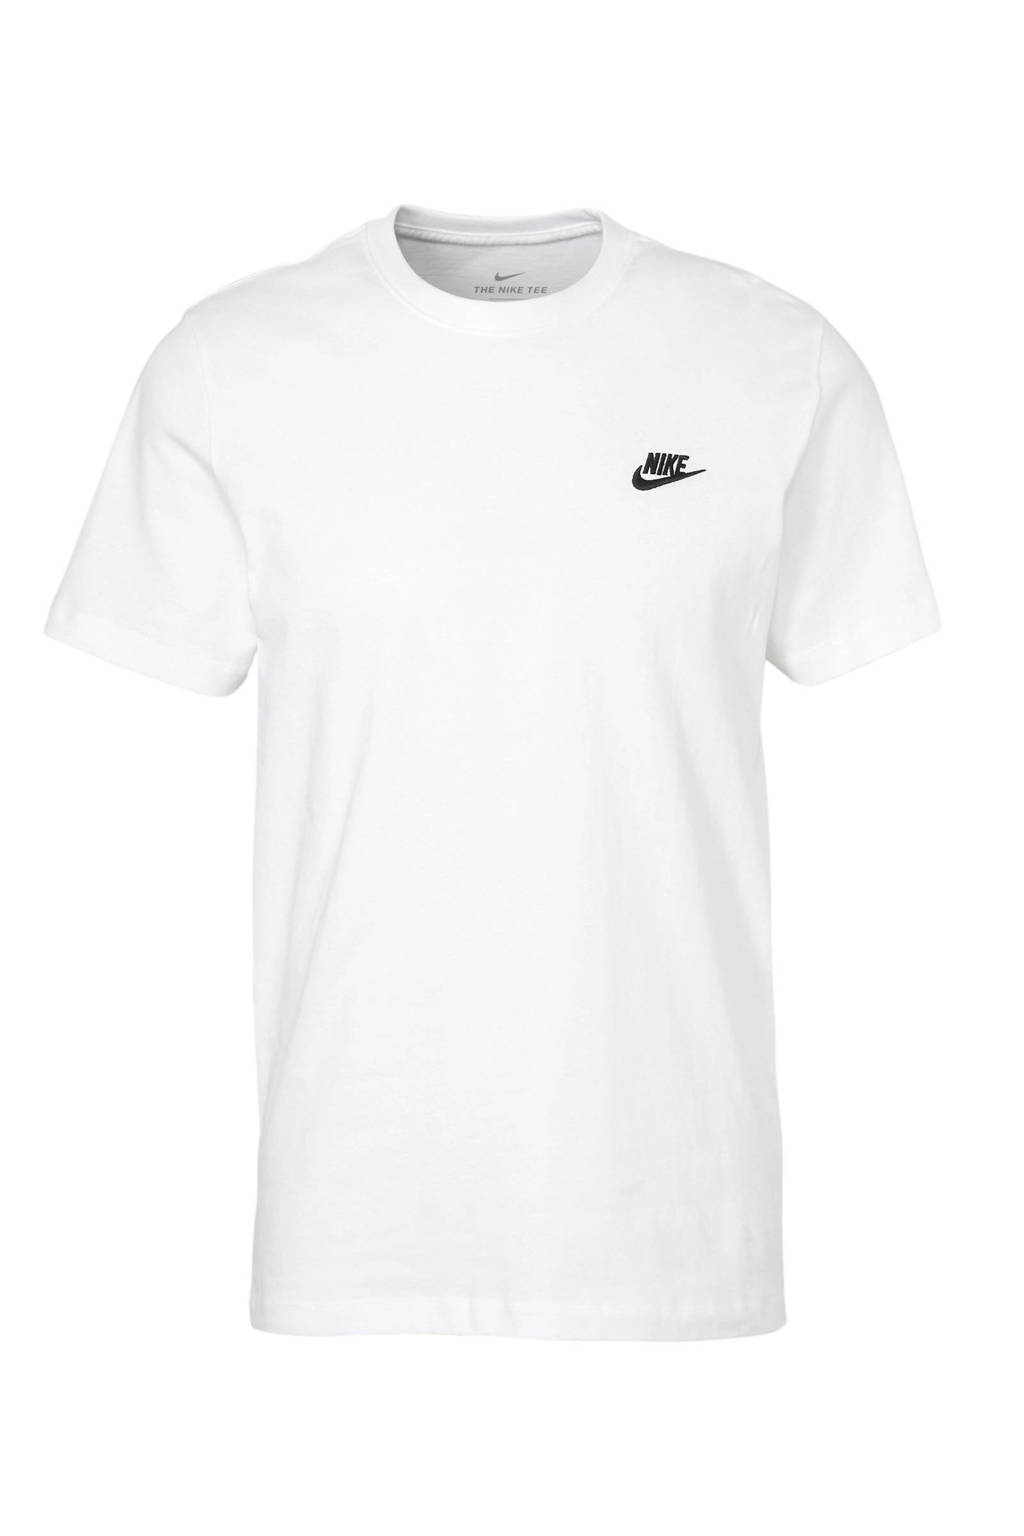 Nike T-shirt wit, Wit/zwart